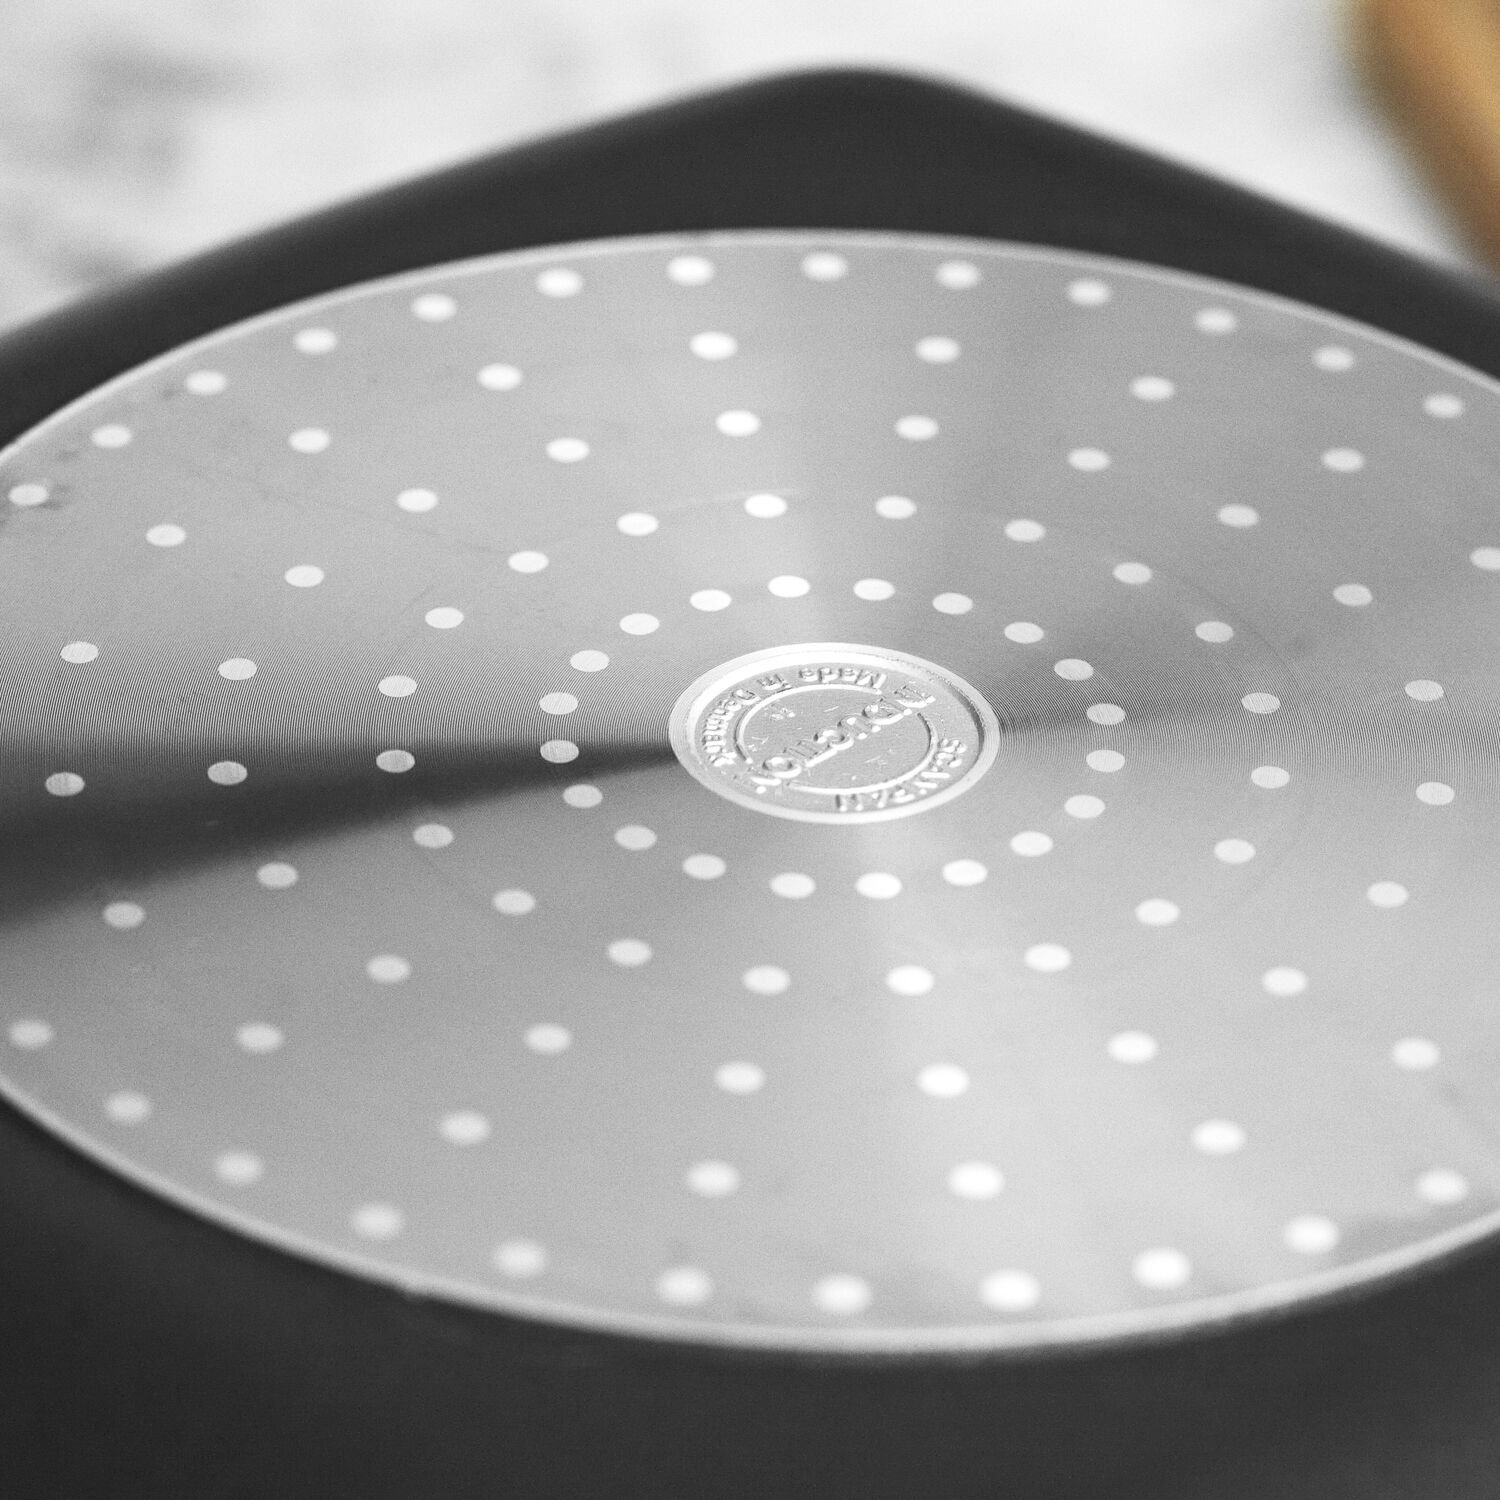 Scanpan Pro IQ Nonstick Deep Grill Pan | Sur La Table